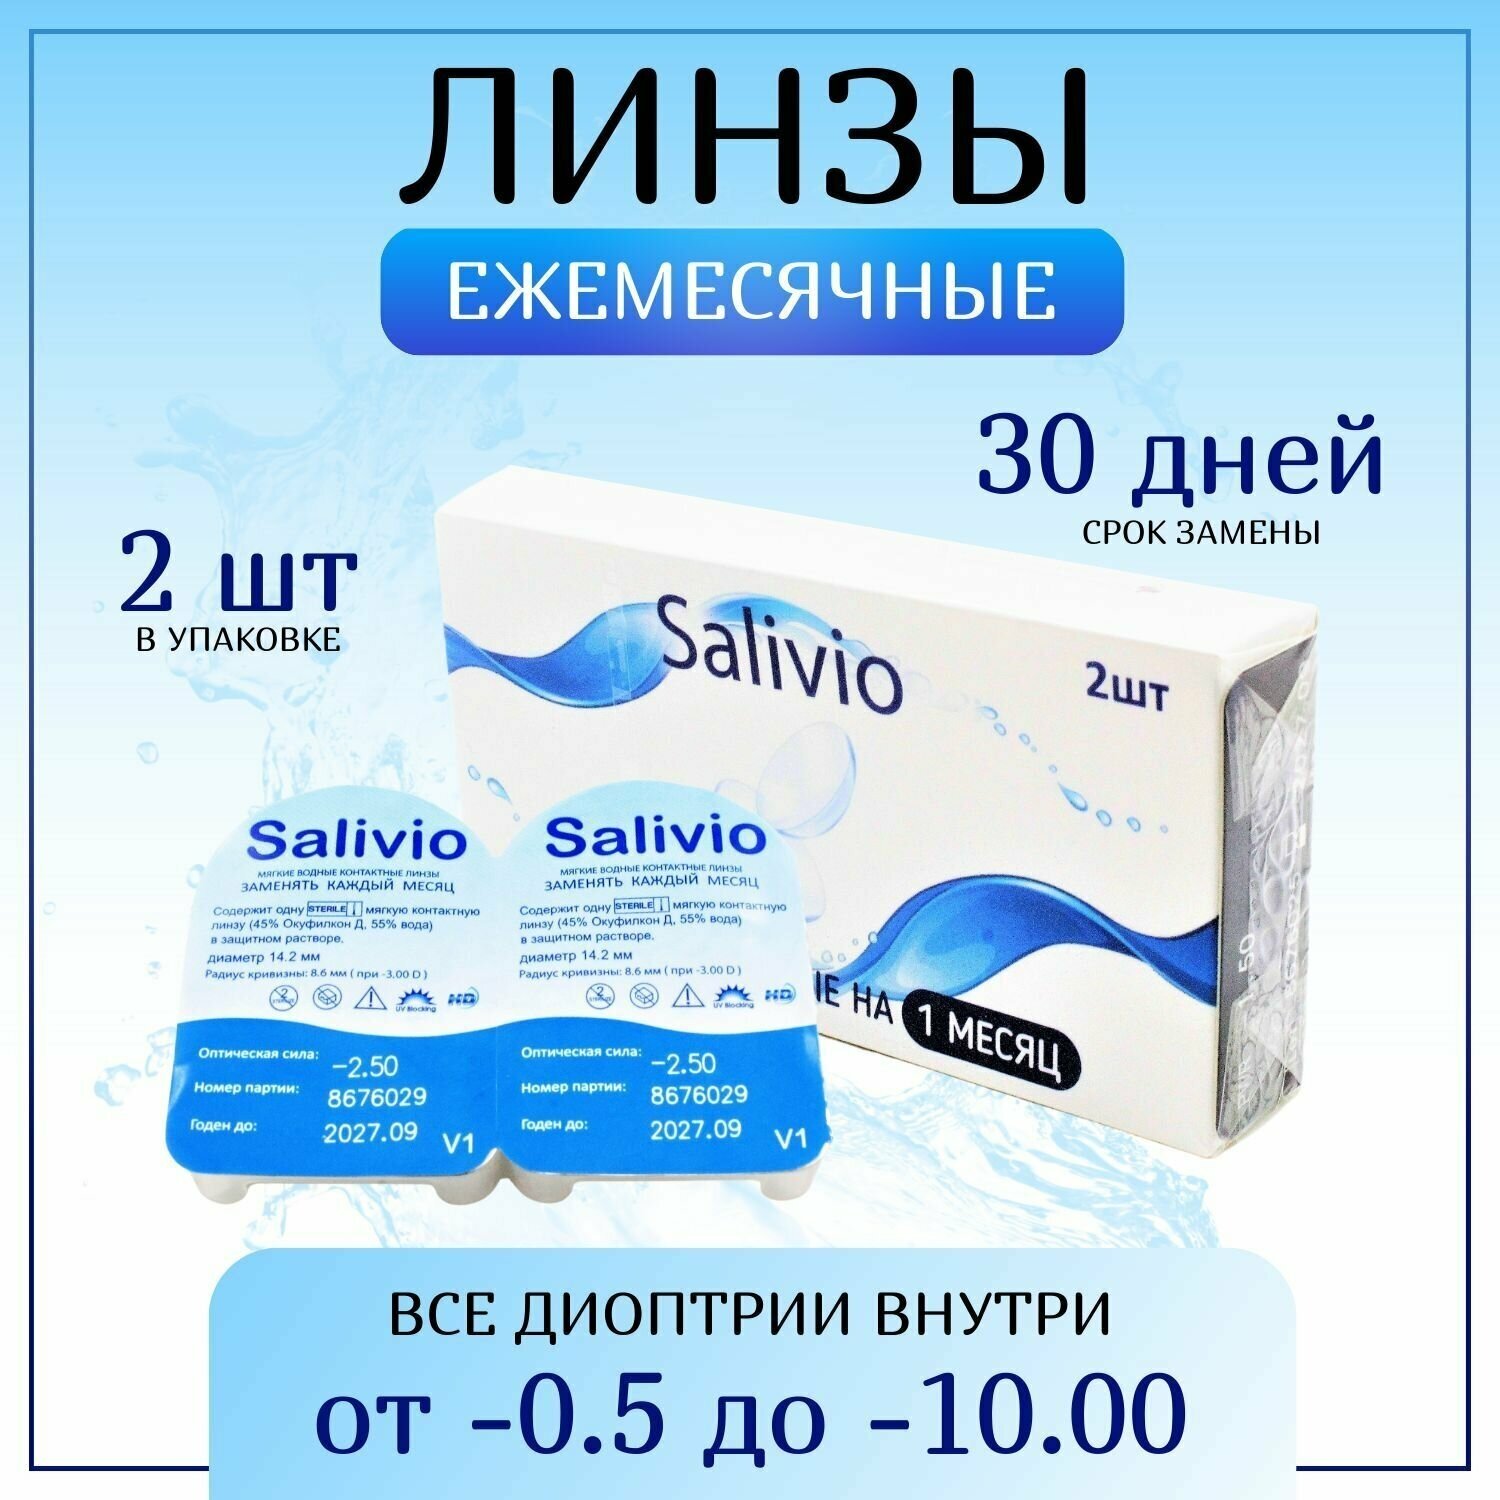 Контактные линзы, SALIVIO, -1,50 ежемесячные (30 дней), 2 штуки, прозрачные